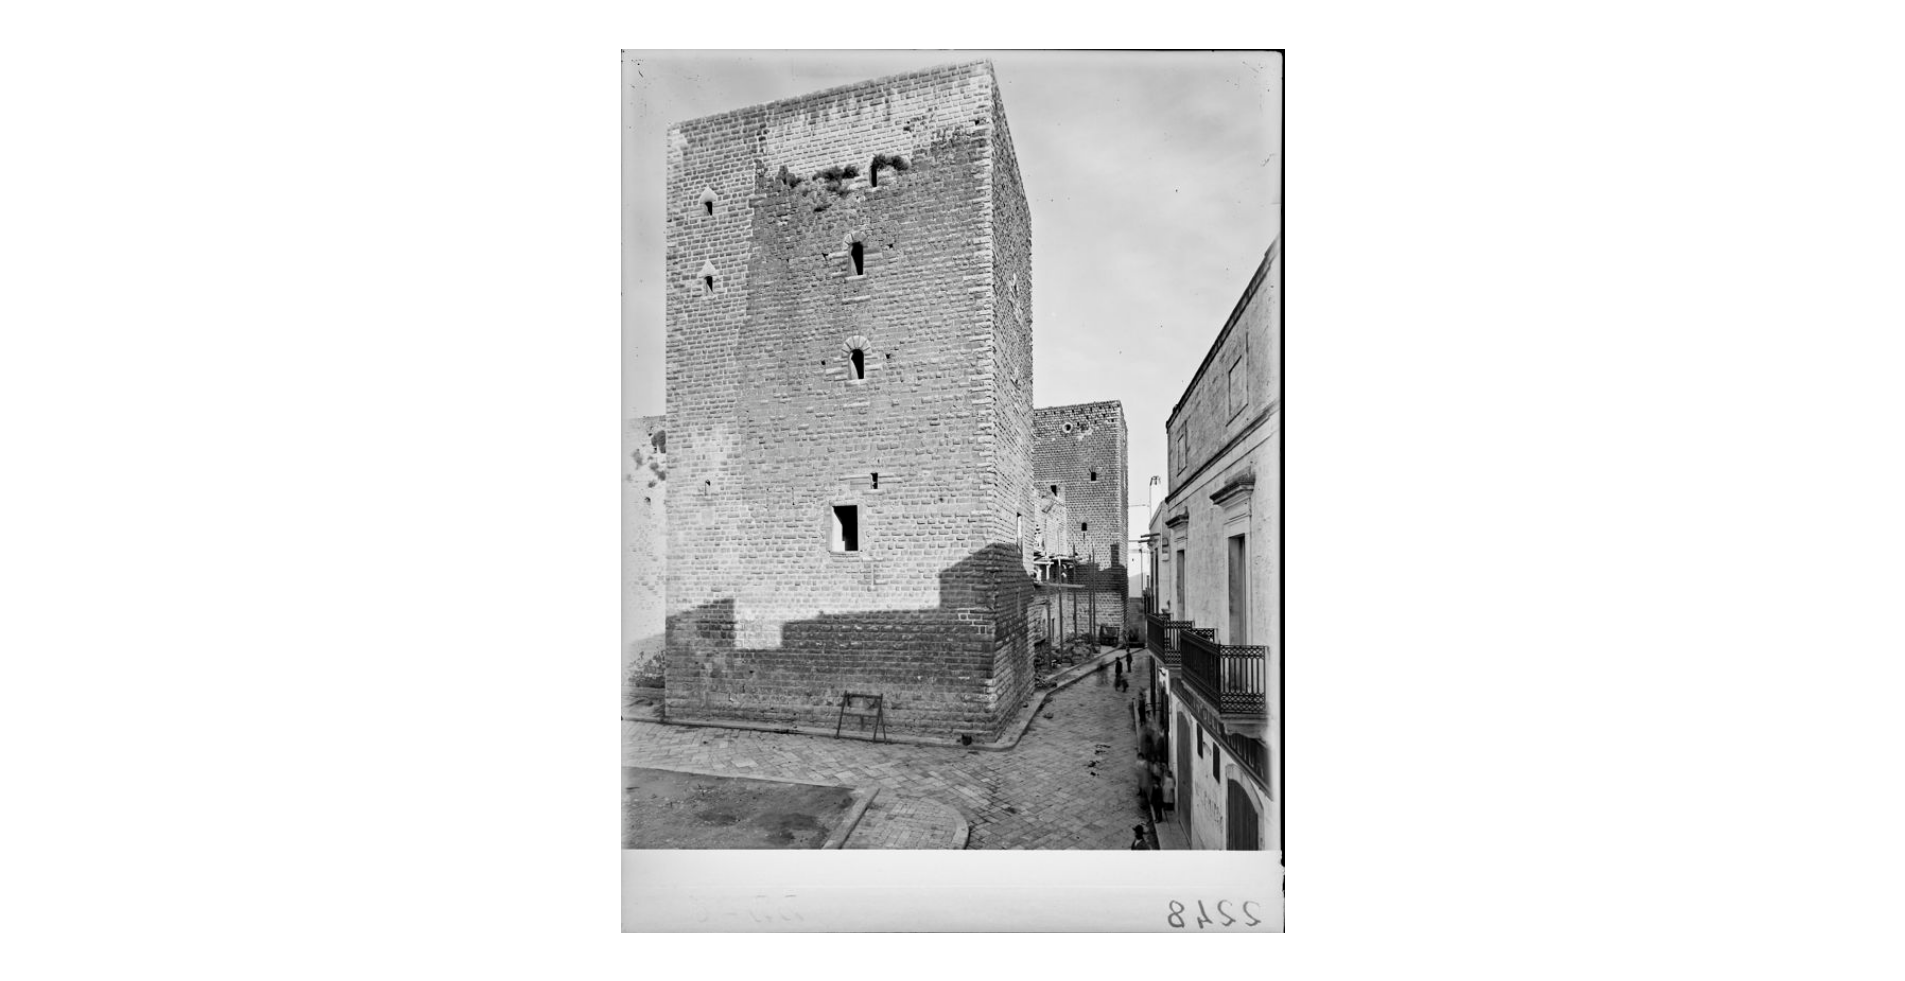 Fotografo non identificato, Gioia del Colle - Castello, 1908, gelatina ai sali d'argento/vetro, E002248